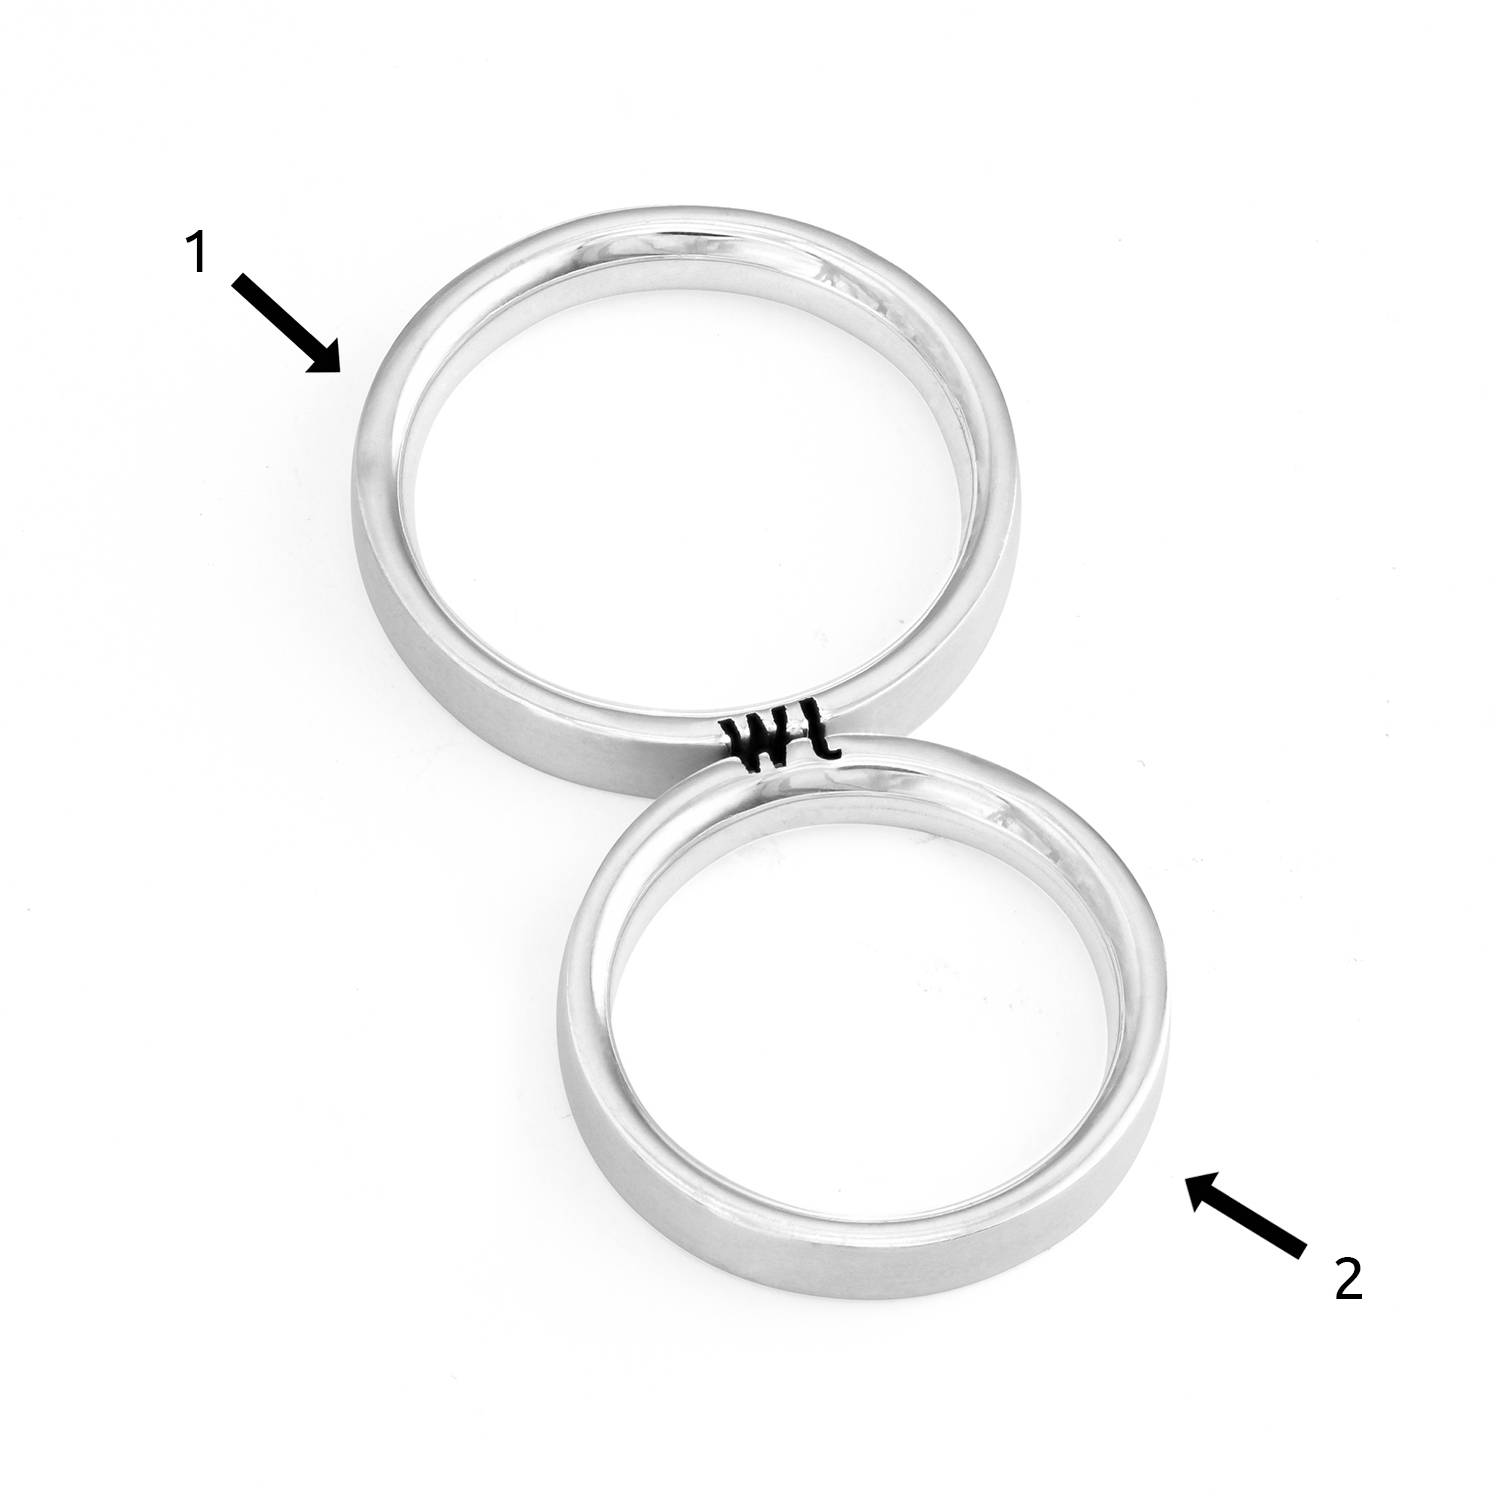 Bijpassende Initialen Belofte Ringen (Ringenset) in Zilver-7 Productfoto